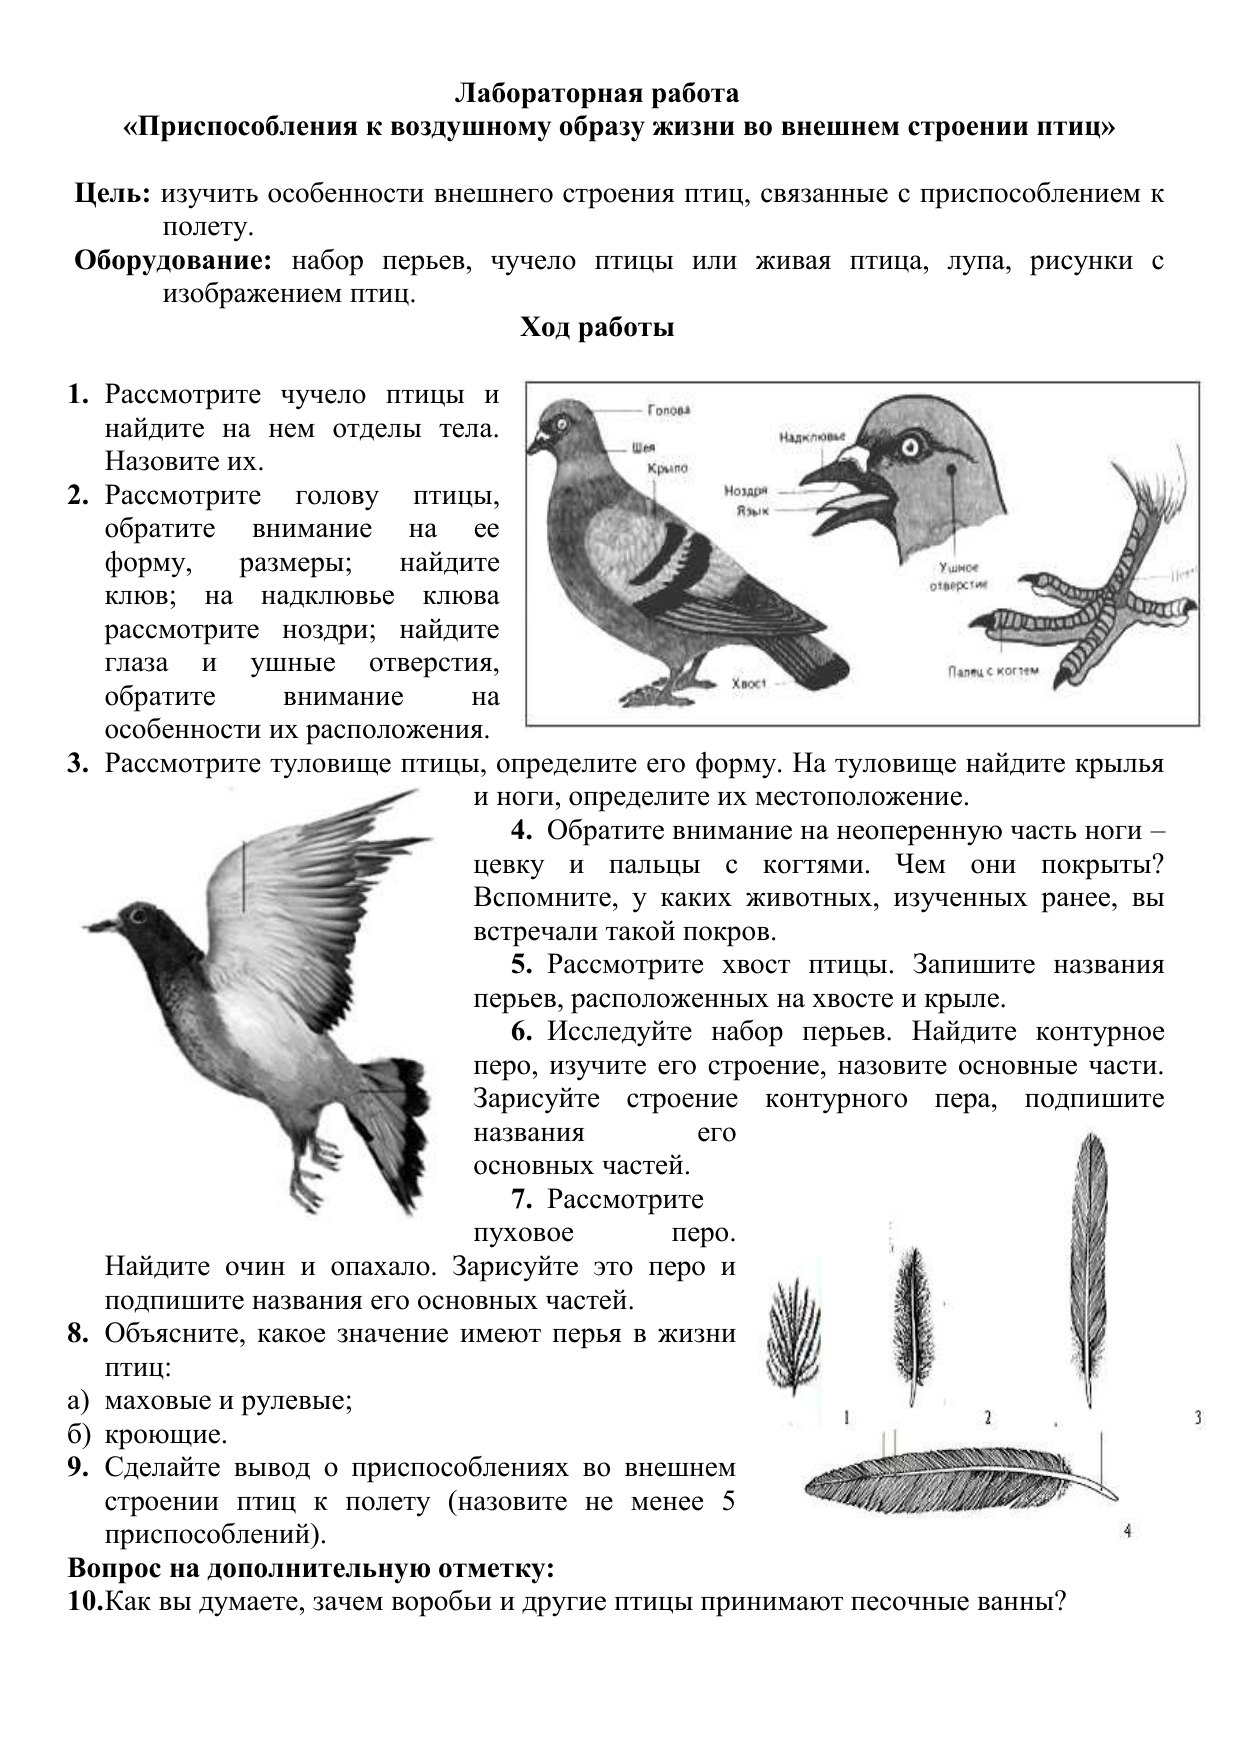 Лабораторная работа по биологии 7 класс строение птиц. Практическая работа изучение внешнего строения перьев птиц. Внешнее строение и перьевой Покров птиц.